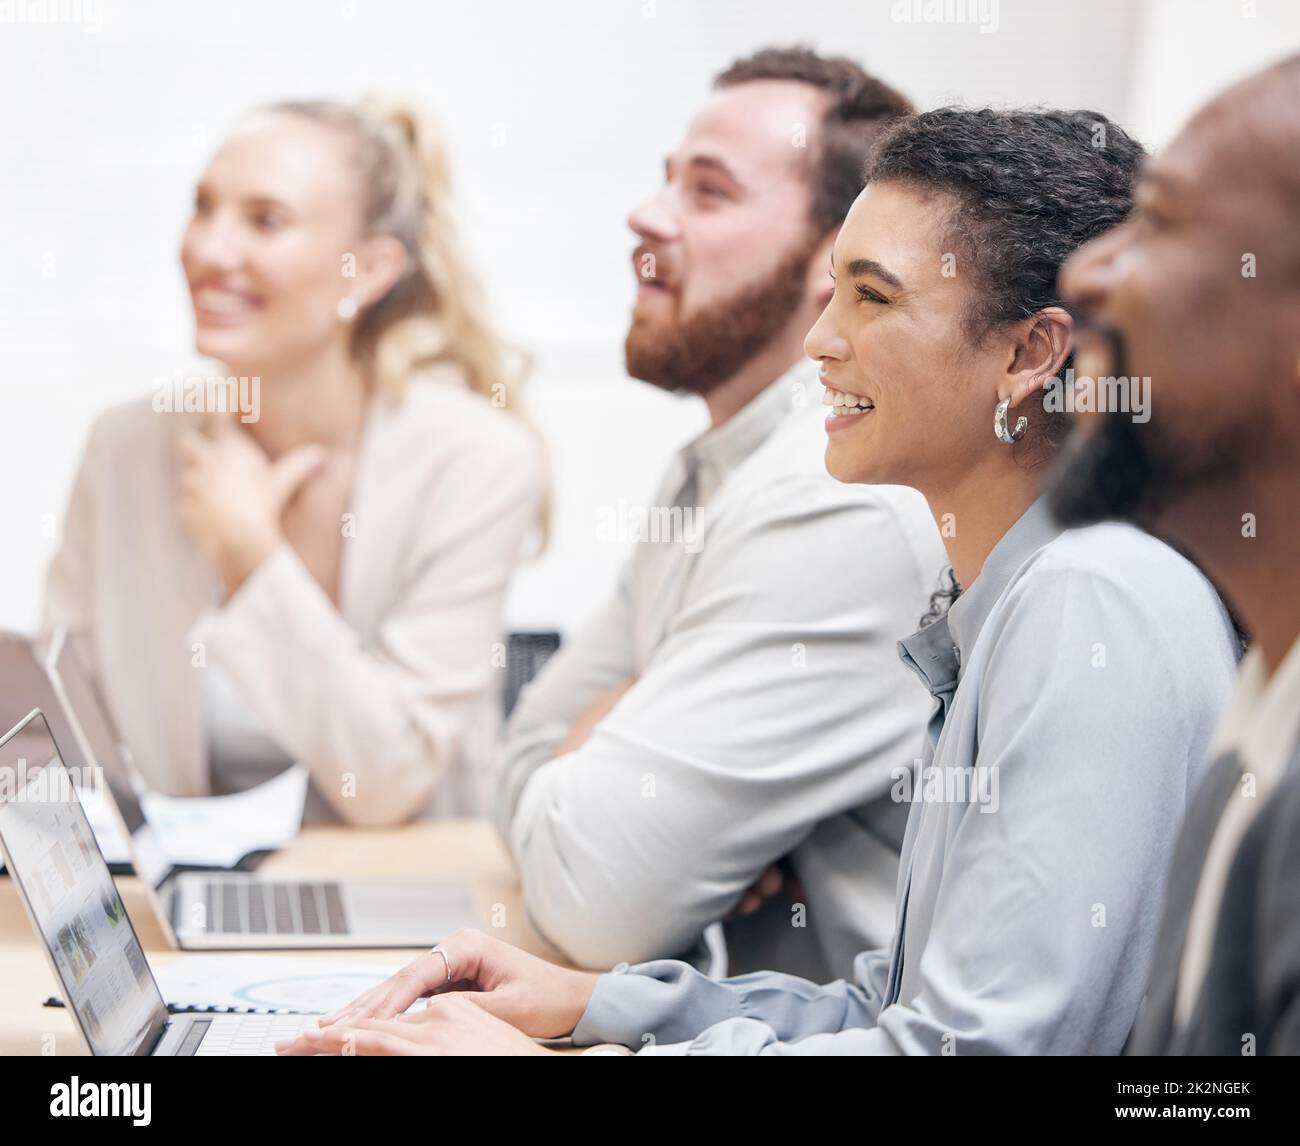 Auffällige Informationen. Eine kleine Aufnahme einer attraktiven jungen Geschäftsfrau und ihrer Kollegen, die während eines Meetings im Sitzungssaal sitzen. Stockfoto